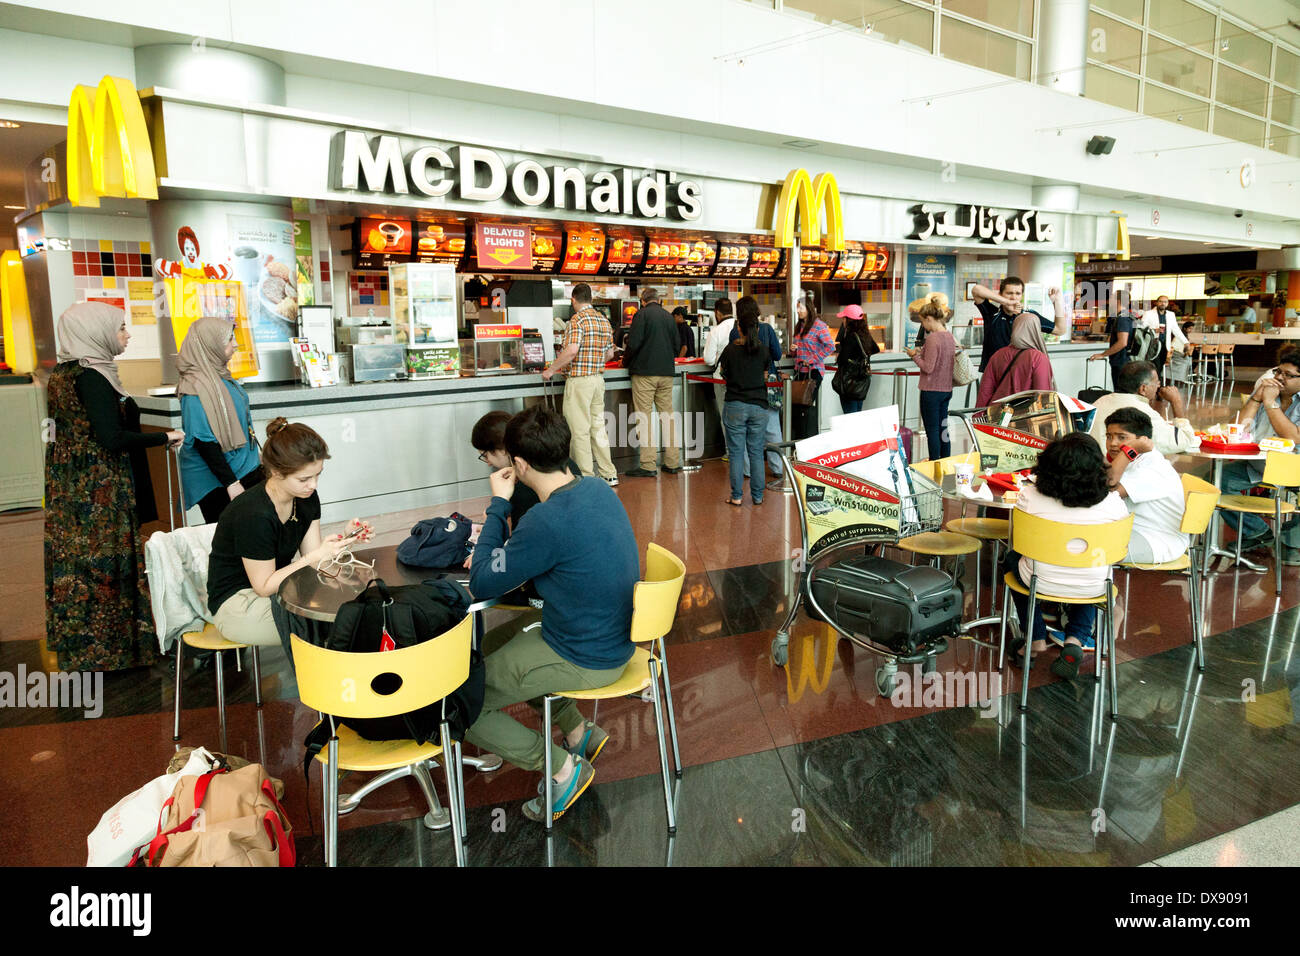 McDonalds Restaurant Café, Abflughalle, Flughafen Dubai, Vereinigte Arabische Emirate, Vereinigte Arabische Emirate Naher Osten Stockfoto